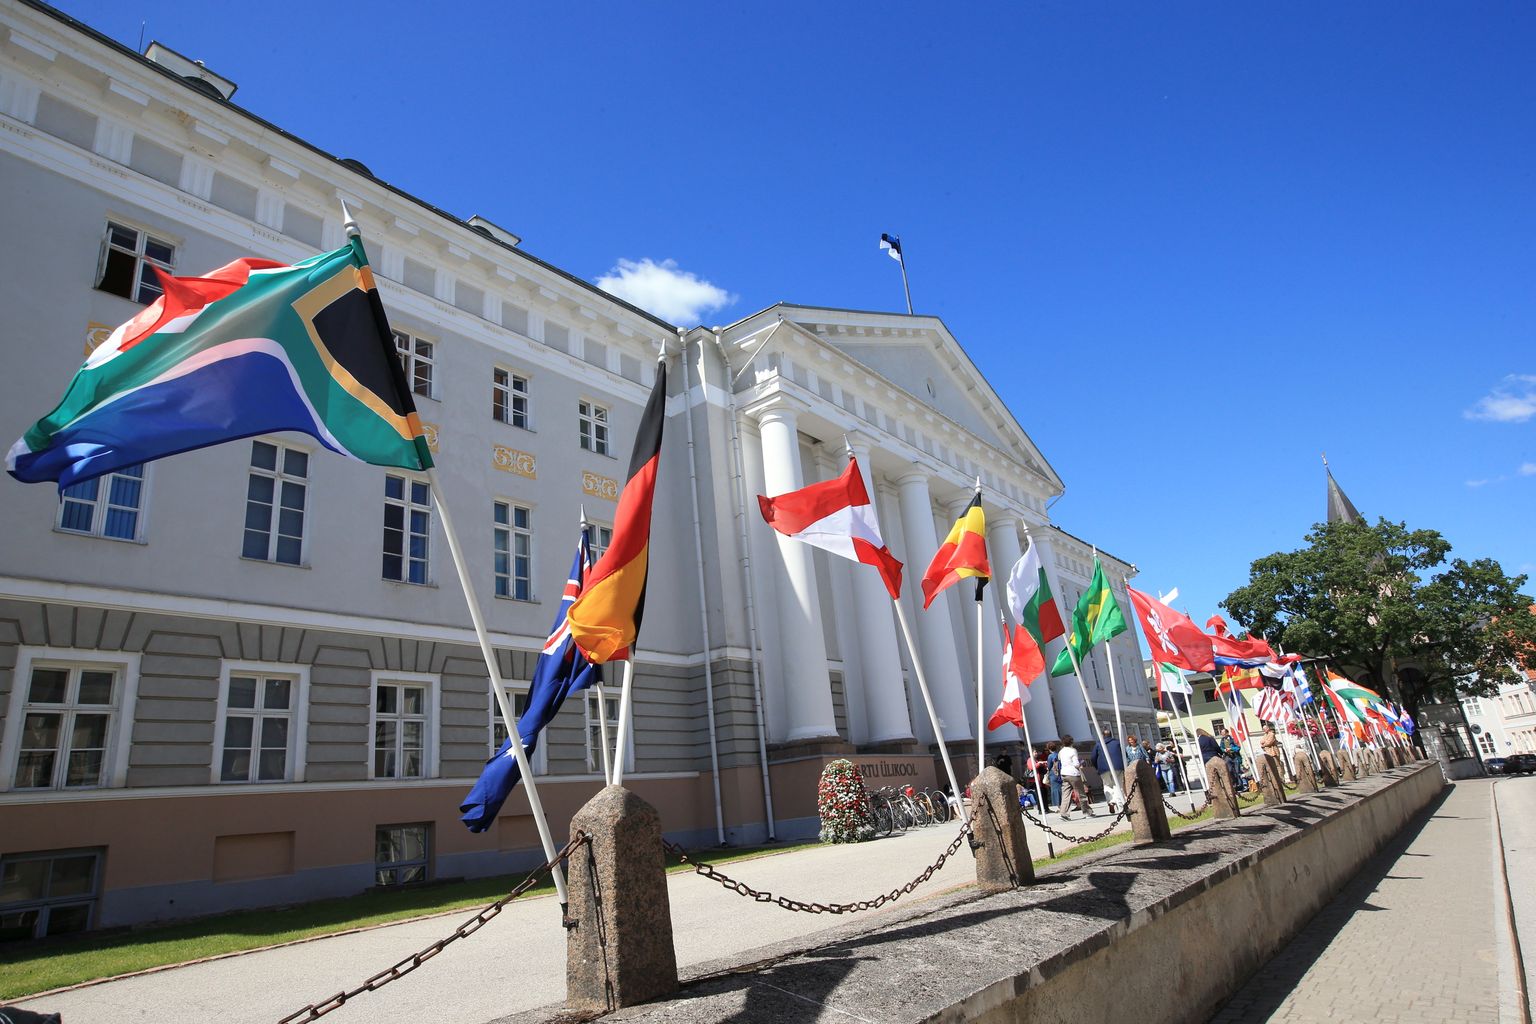 Religiooniuurijate konverentsi auks lehvivad Tartu ülikooli peahoone ees lipud, mis tähistavad riike, kust on konverentsile saabunud teadlased pärit.